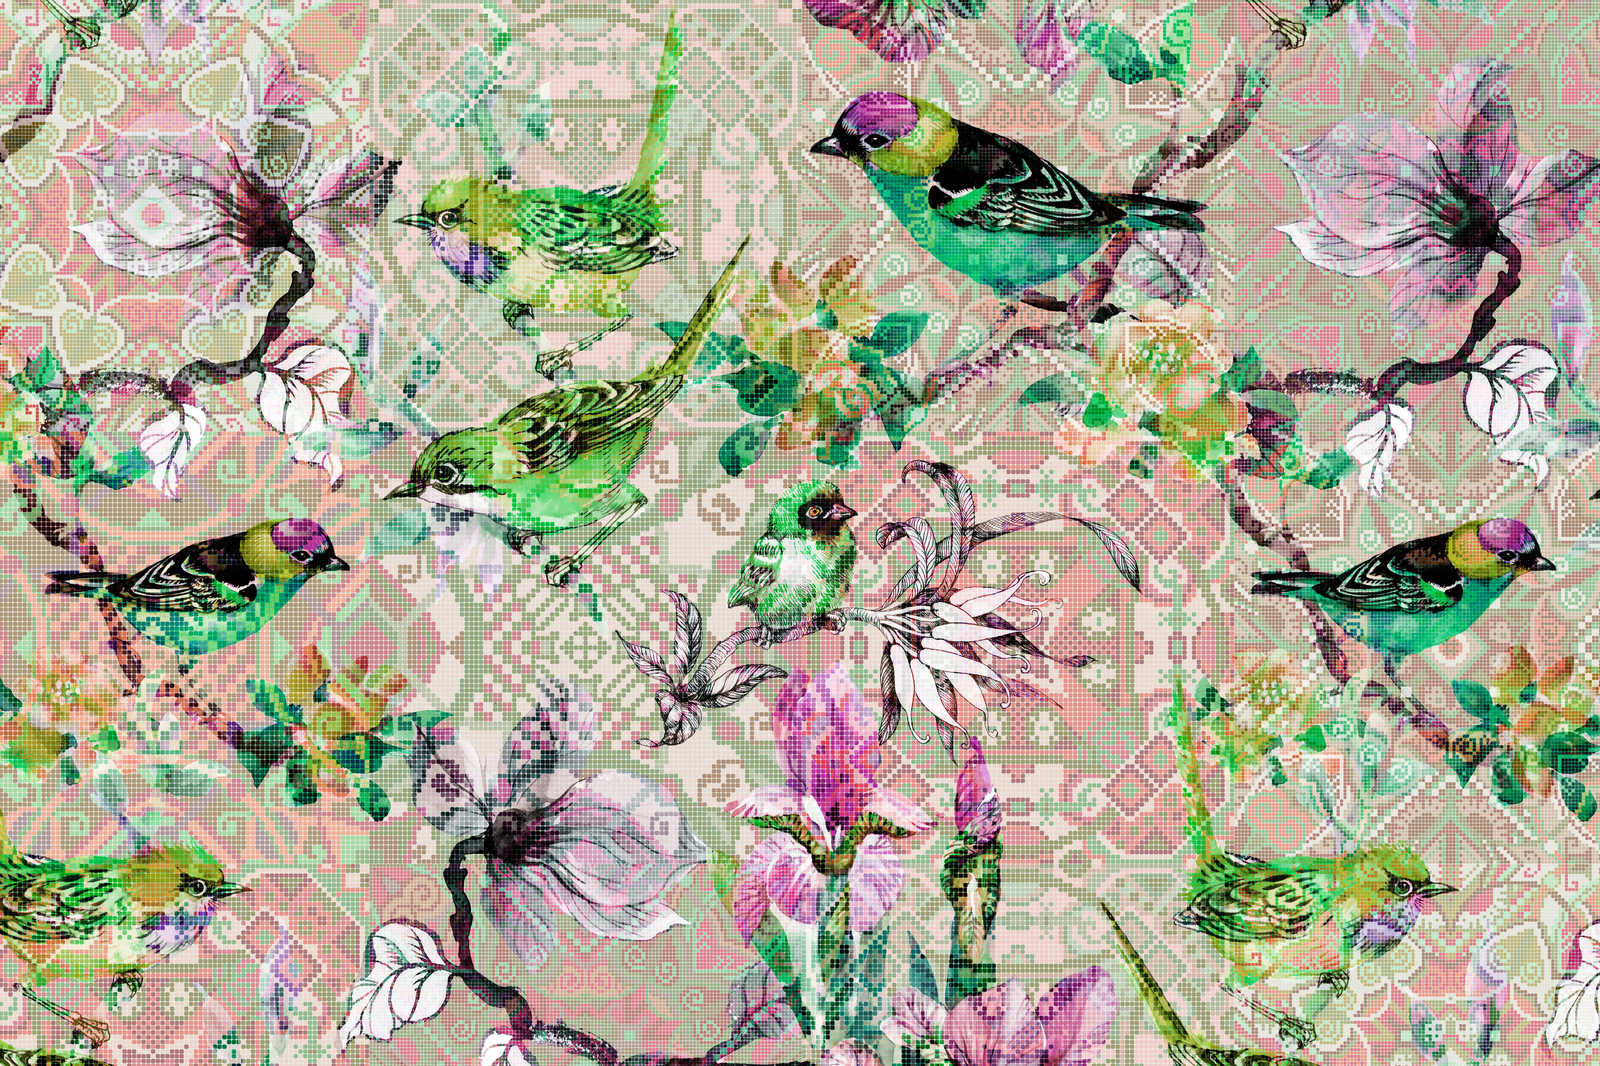             Cuadro lienzo pájaros en mosaico | pájaros en mosaico 2 - 0,90 m x 0,60 m
        